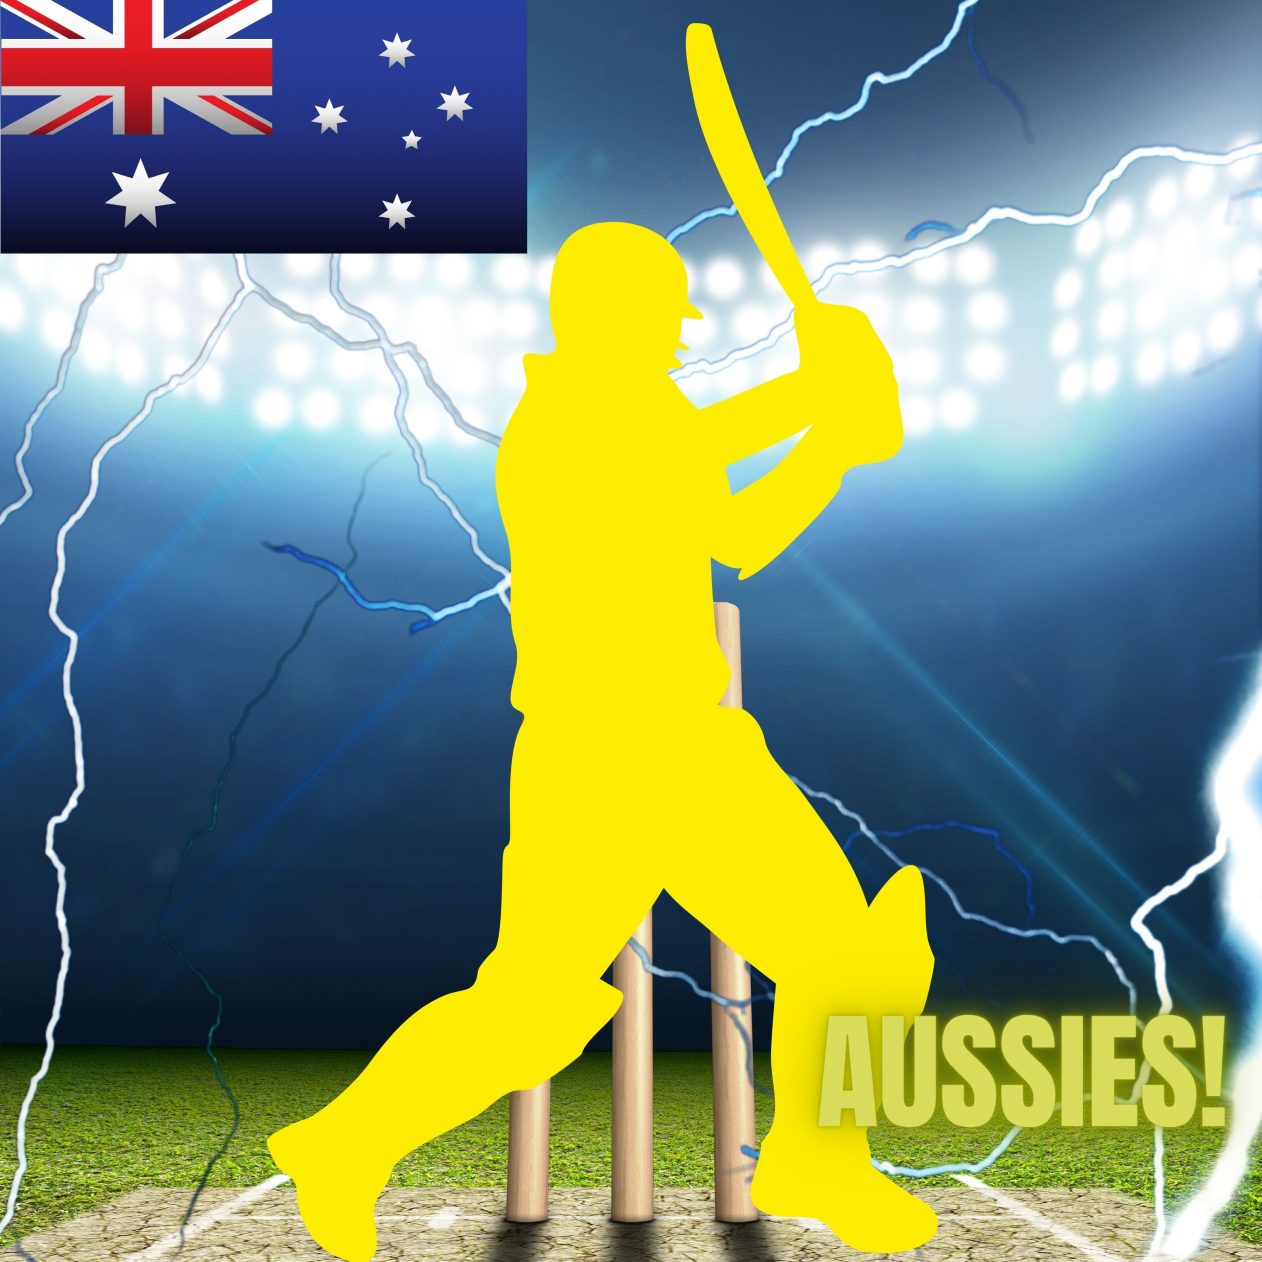 1262x1262 Parallax wallpaper 4k Australia Cricket Stadium iPad Wallpaper 1262x1262 pixels resolution